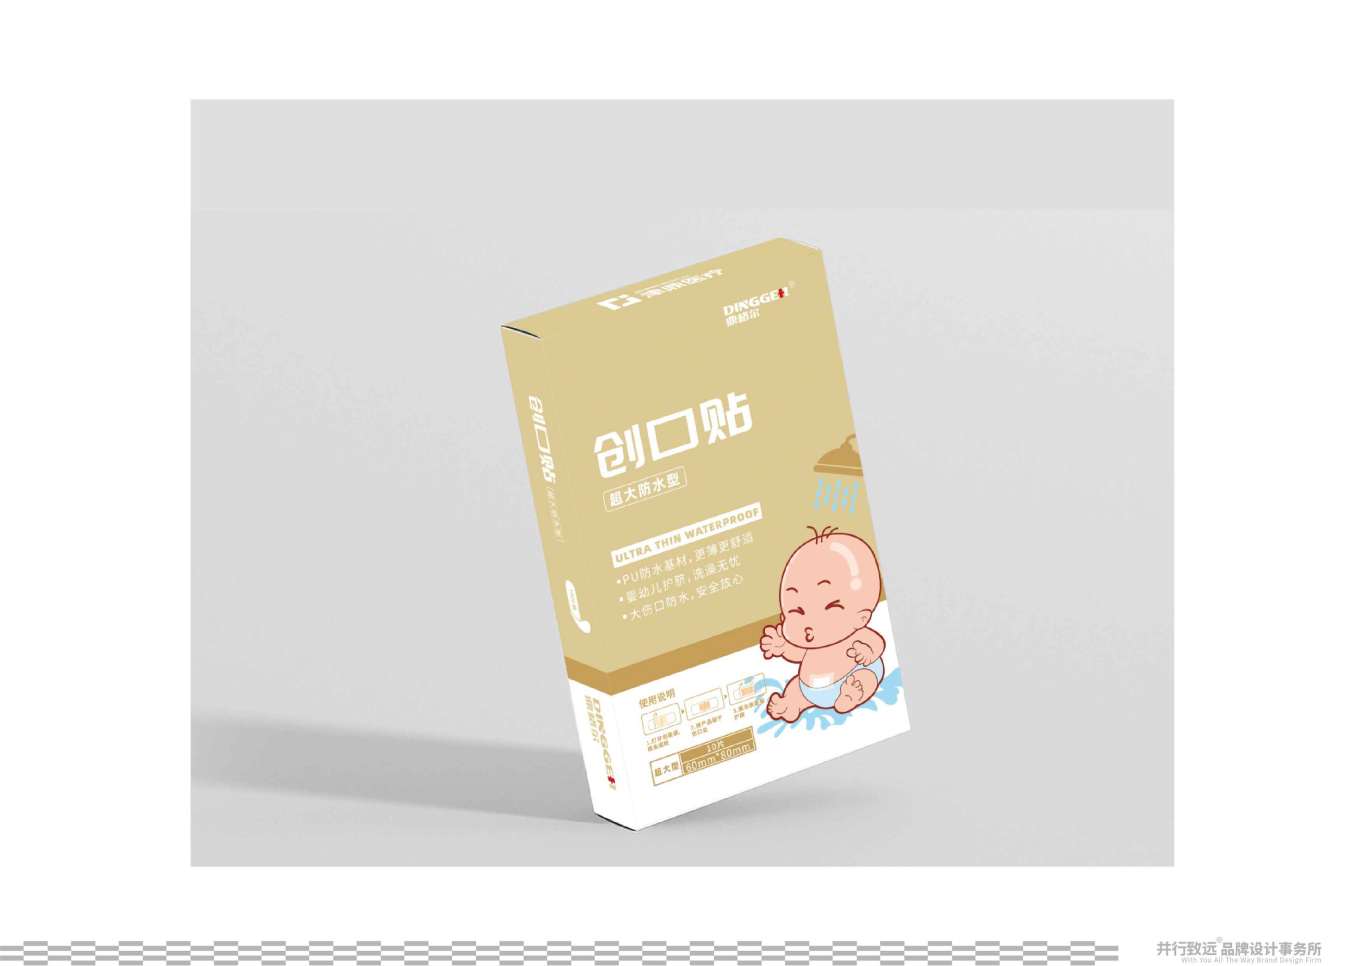 鼎格爾品牌創口貼系列包裝設計圖7